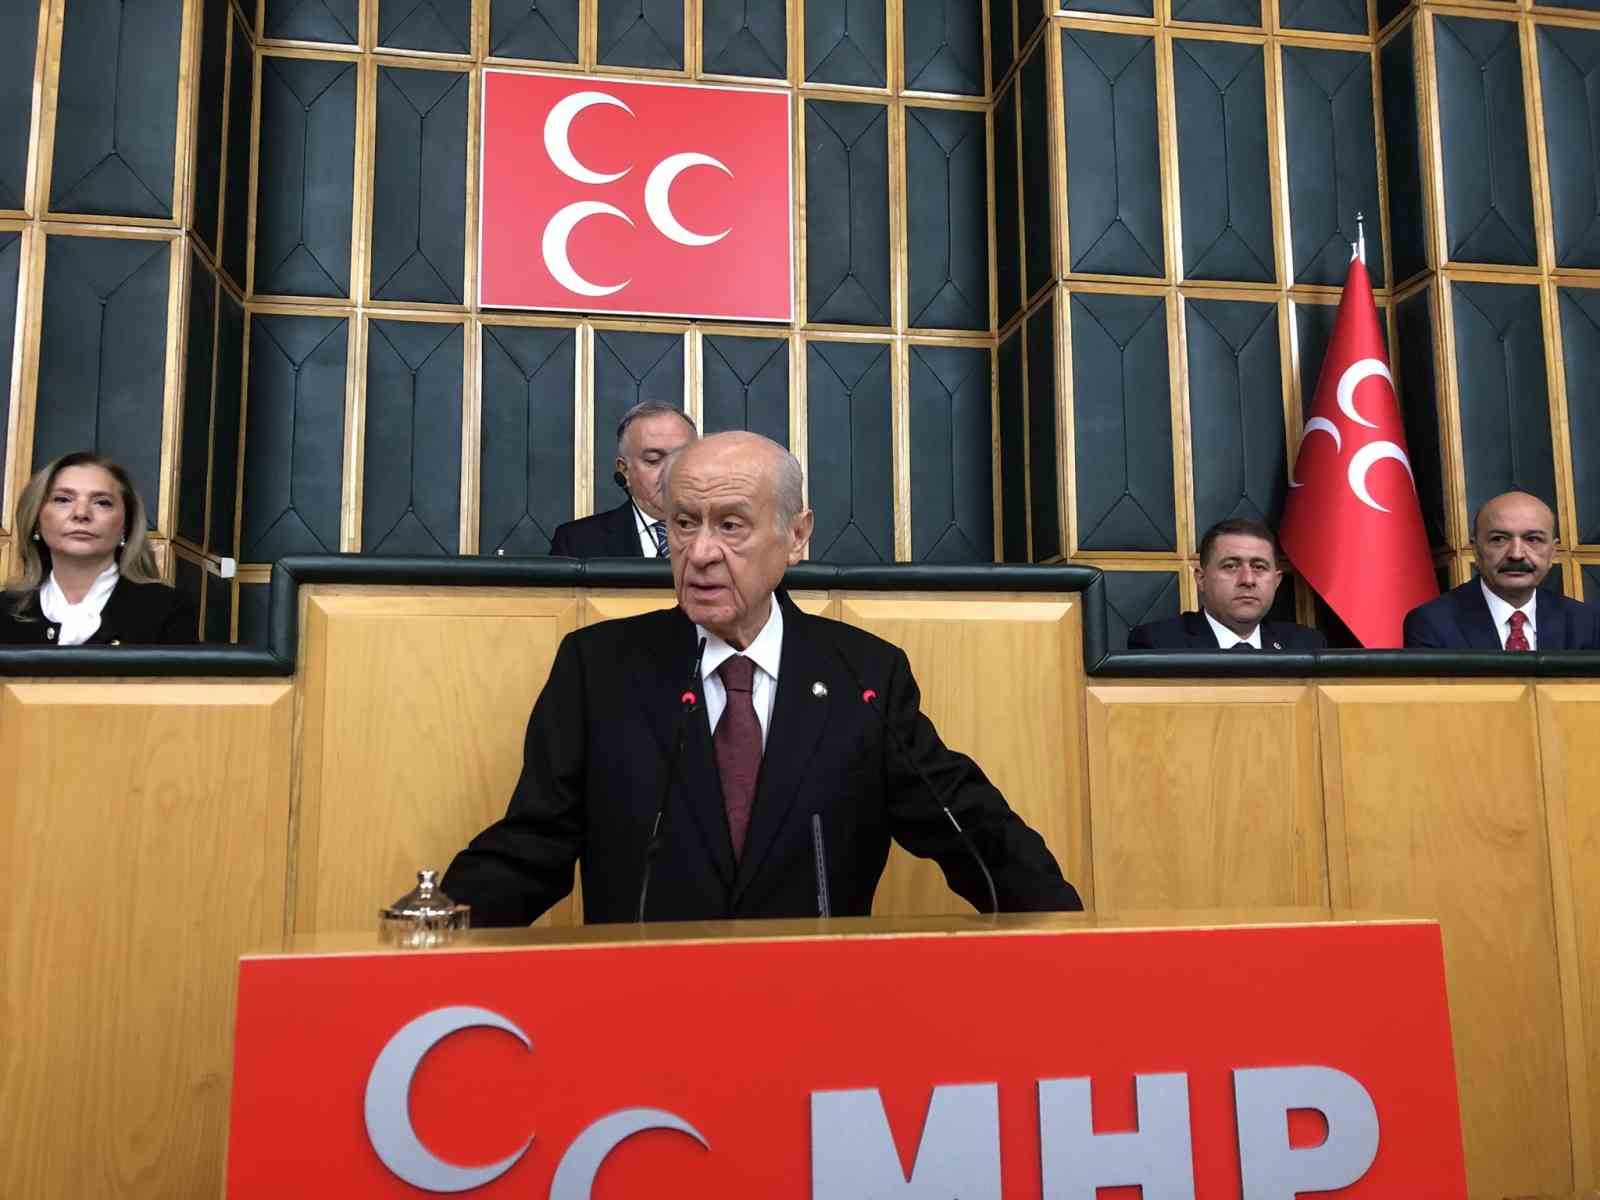 MHP Lideri Bahçeli: (Sinan Ateş davası) "Beklentimiz, iddianamenin kabul edilip yargılamanın başlamasıdır; kimin elinde hangi belge varsa mahkeme ile paylaşmalı"
